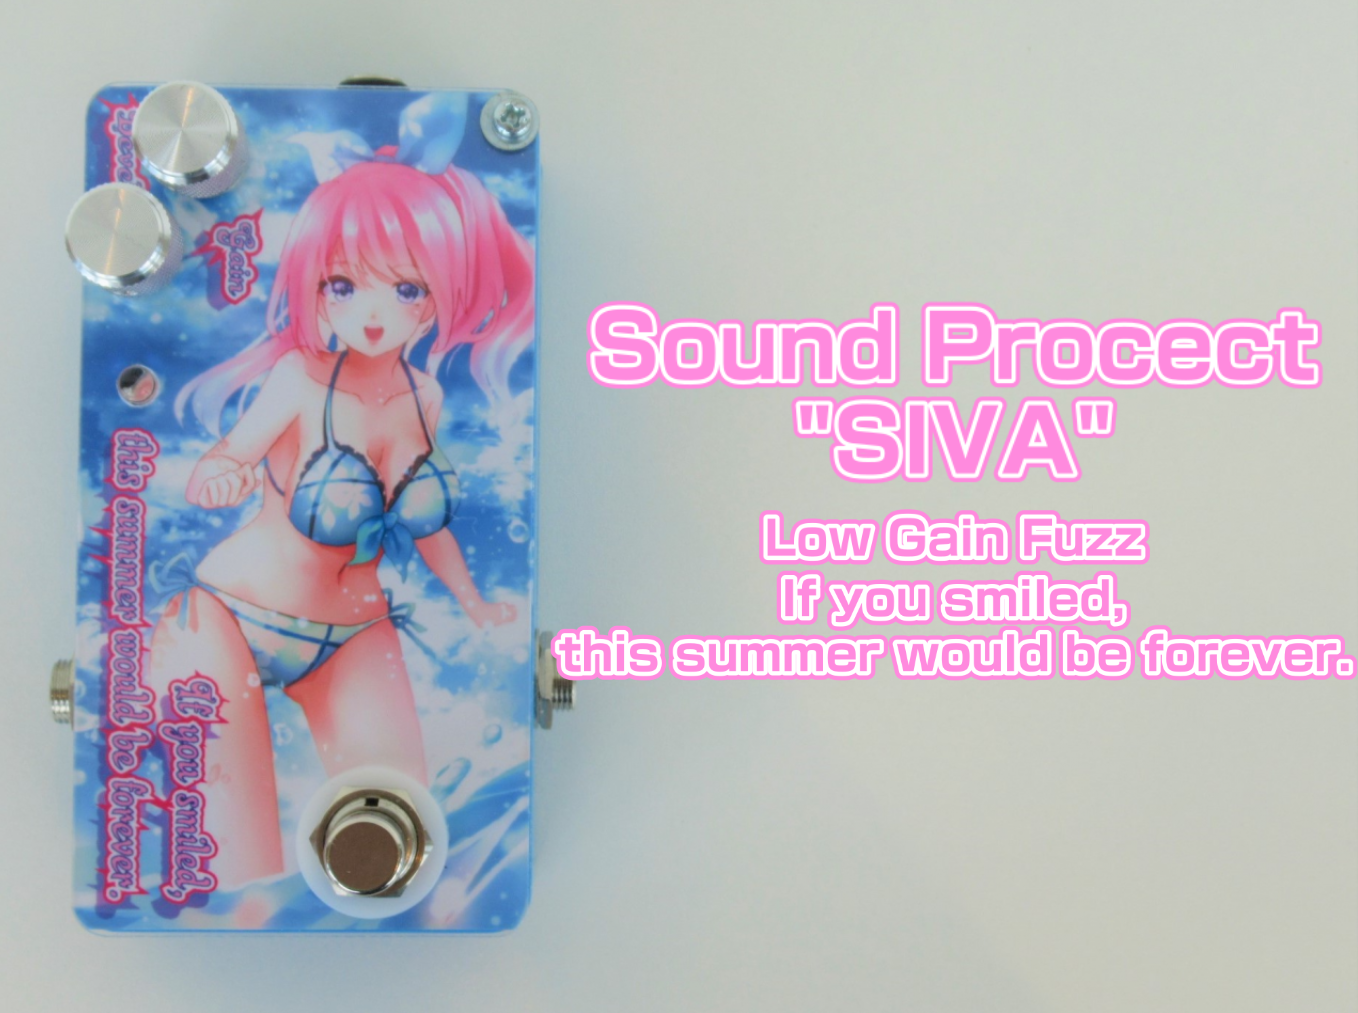 【エフェクター】Sound Project “SIVA” If you smiled,this summer would be forever.展示しています！